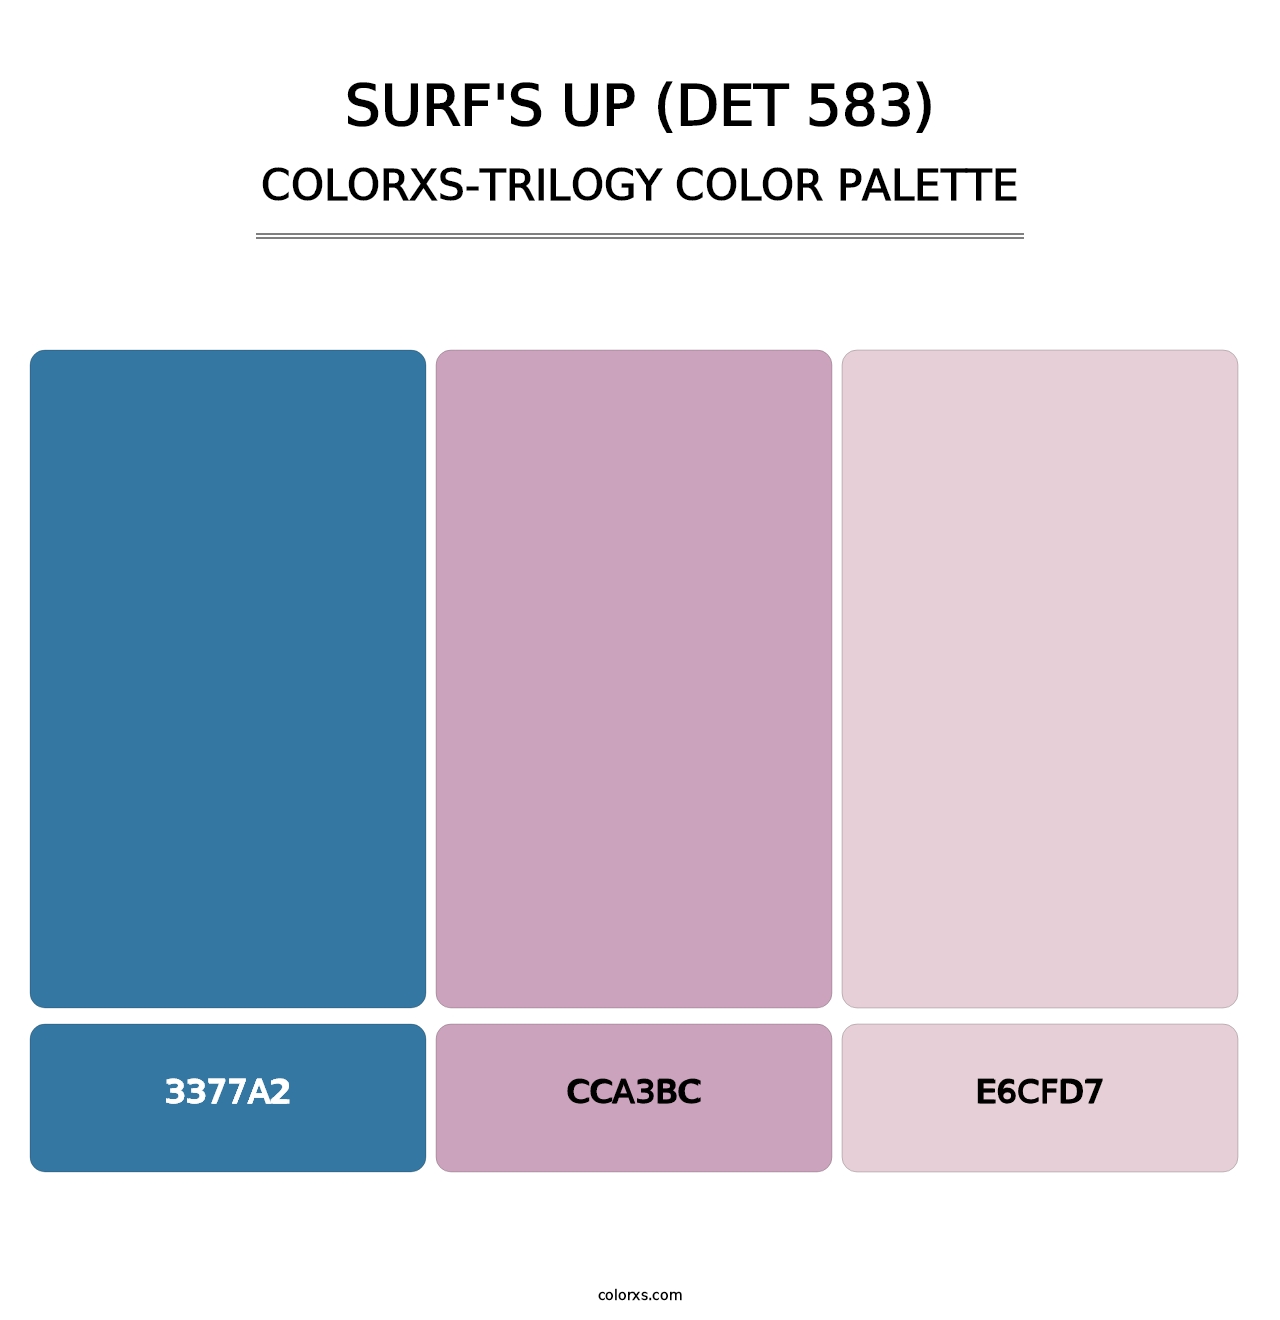 Surf's Up (DET 583) - Colorxs Trilogy Palette